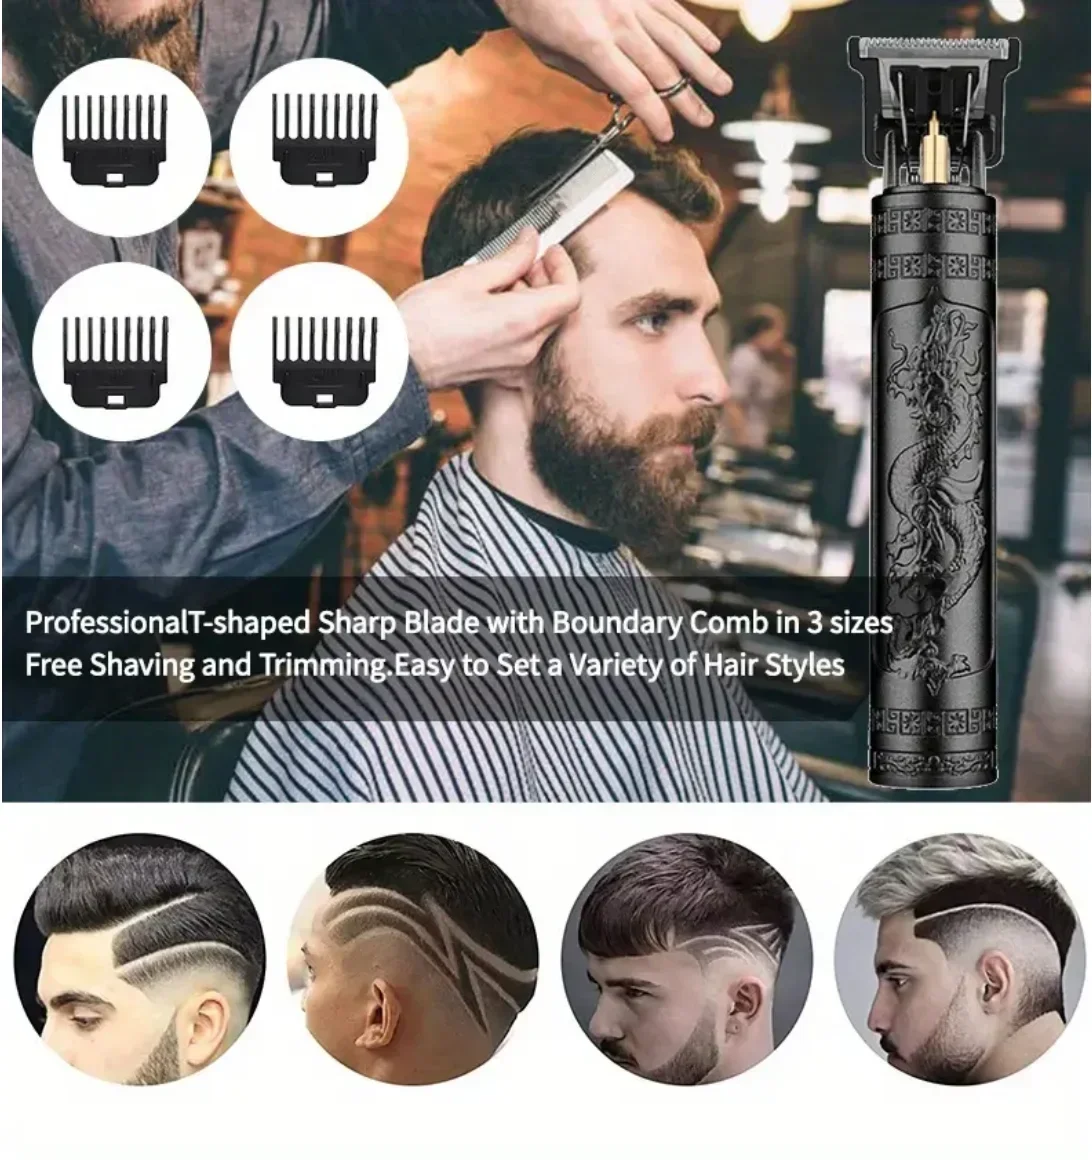 Винтажная Электрическая Беспроводная машинка для стрижки волос T9, Профессиональный парикмахерский Триммер для мужчин, Машинка для стрижки волос, Бритва, Зажигалка для бороды, подарок